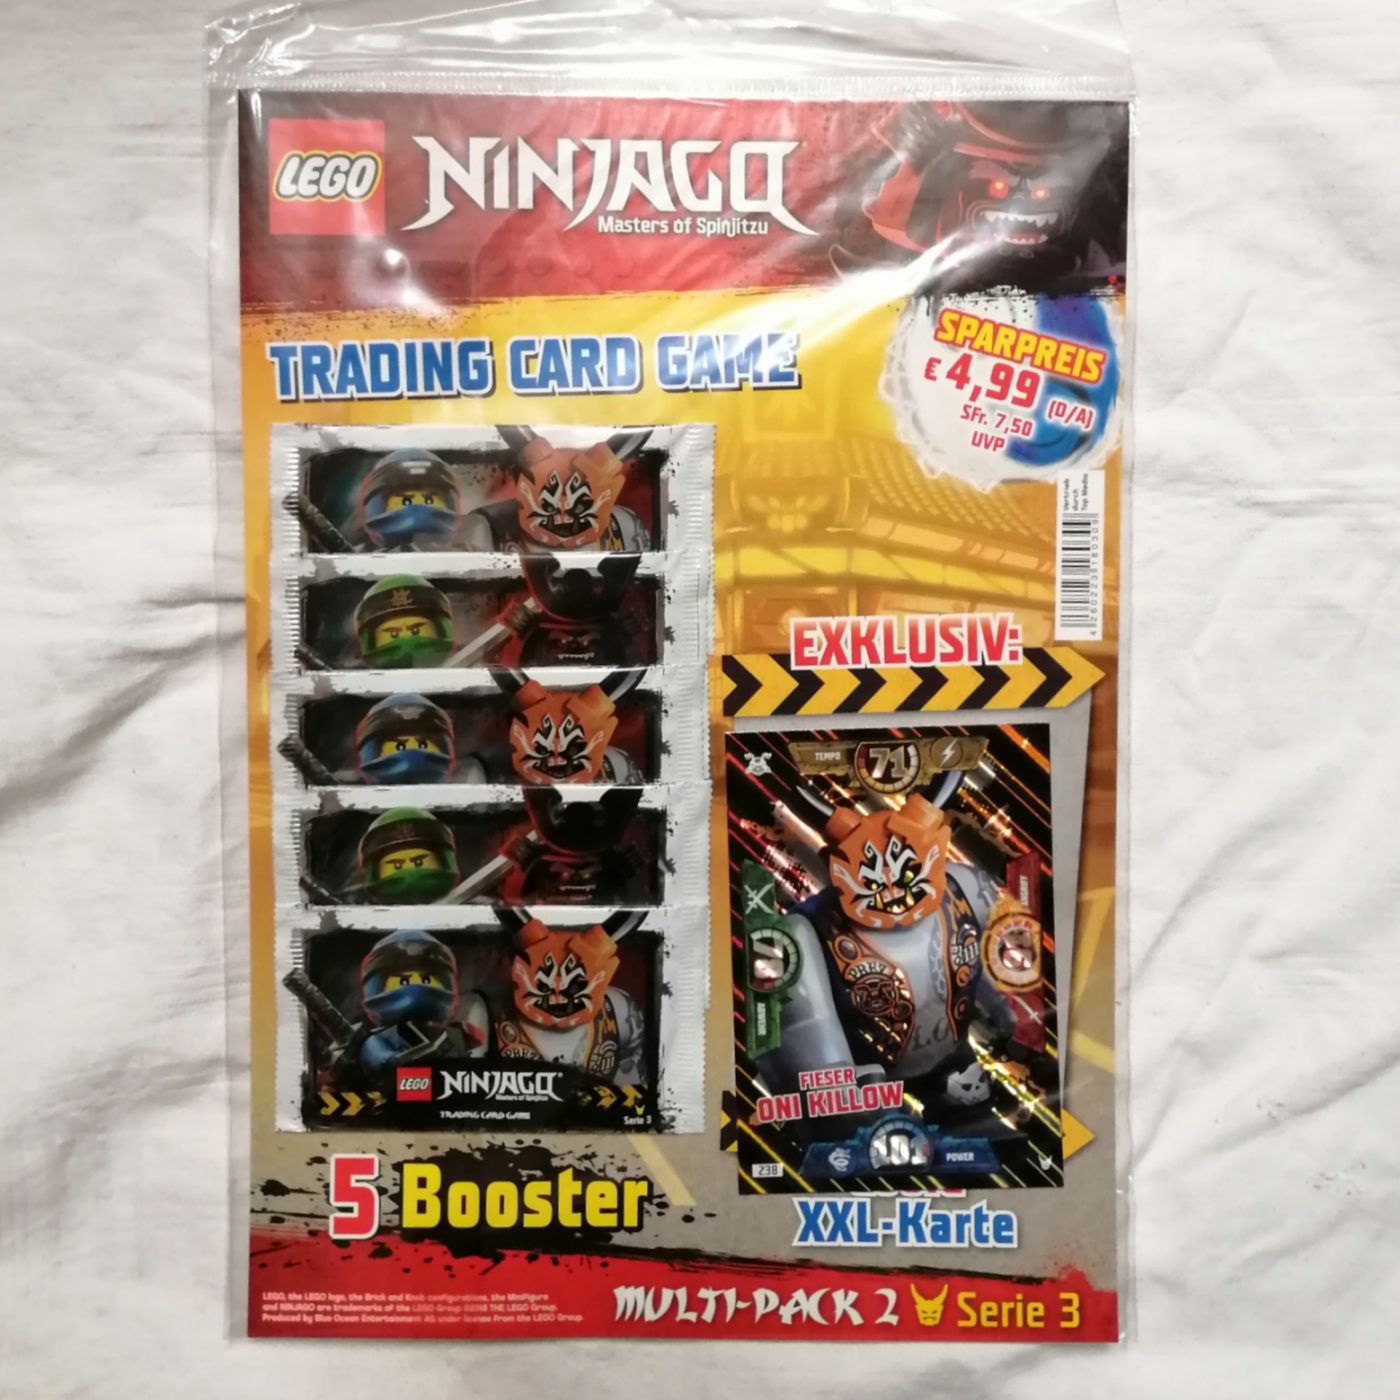 Lego Ninjago TCG Serie 3 Multi-Pack "Fieser Oni Killow" vorne